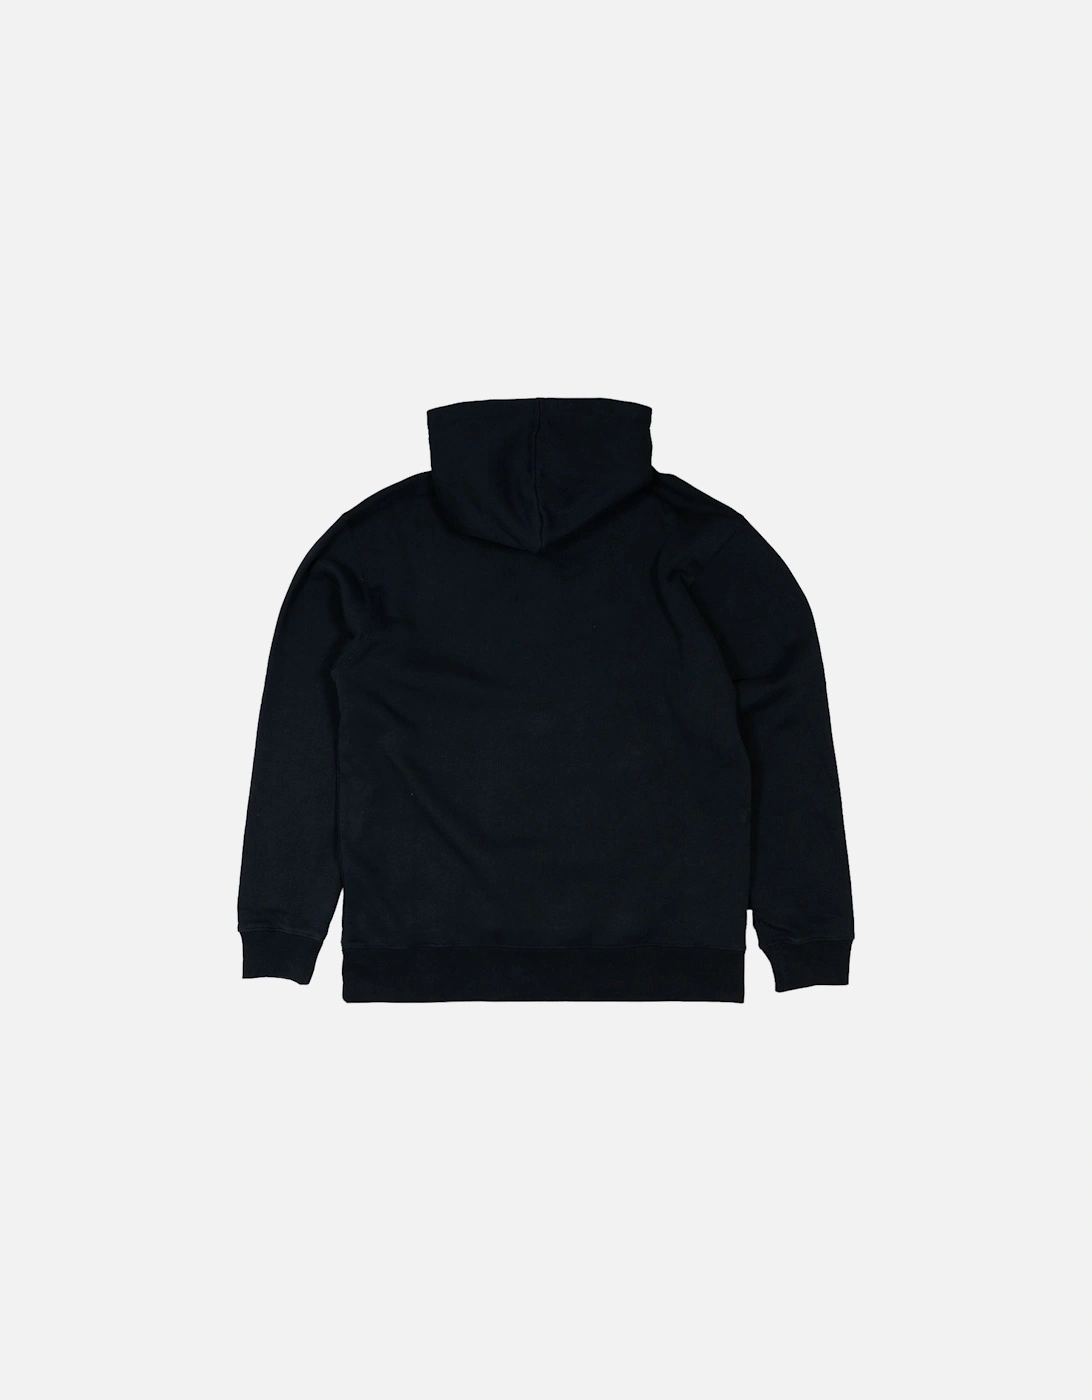 Kuff Hooded Sweatshirt - Black